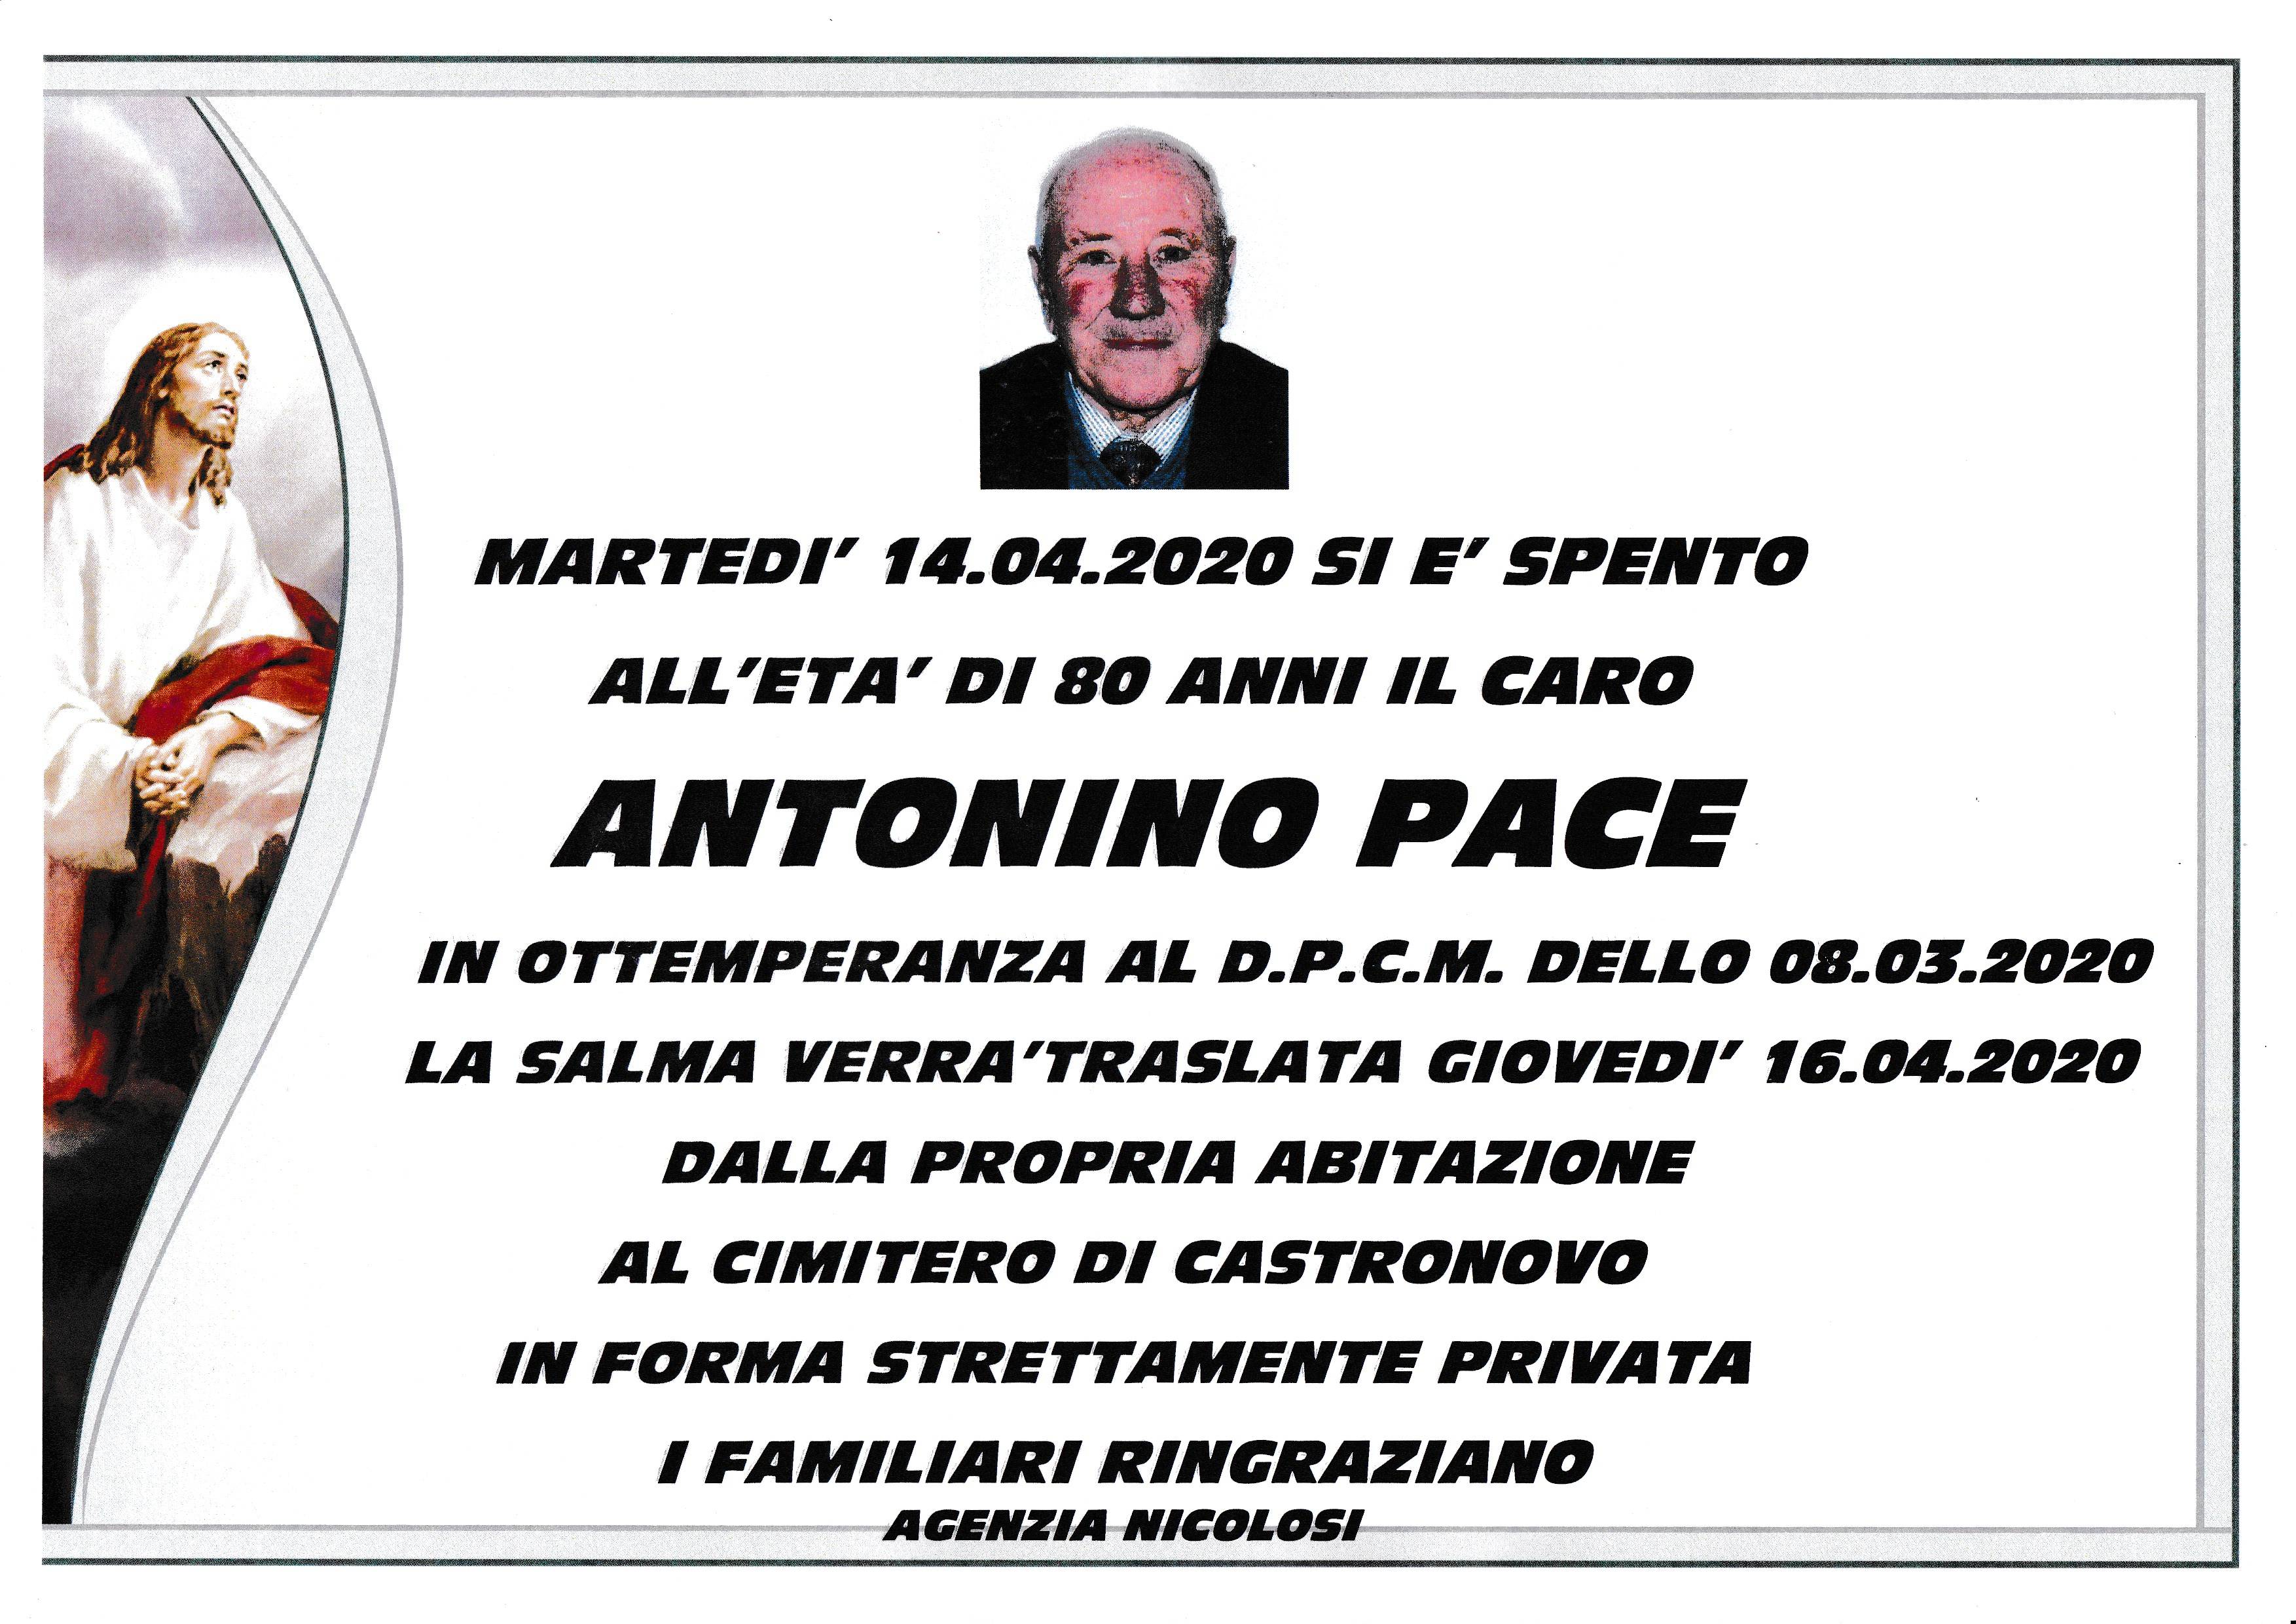 Antonino Pace